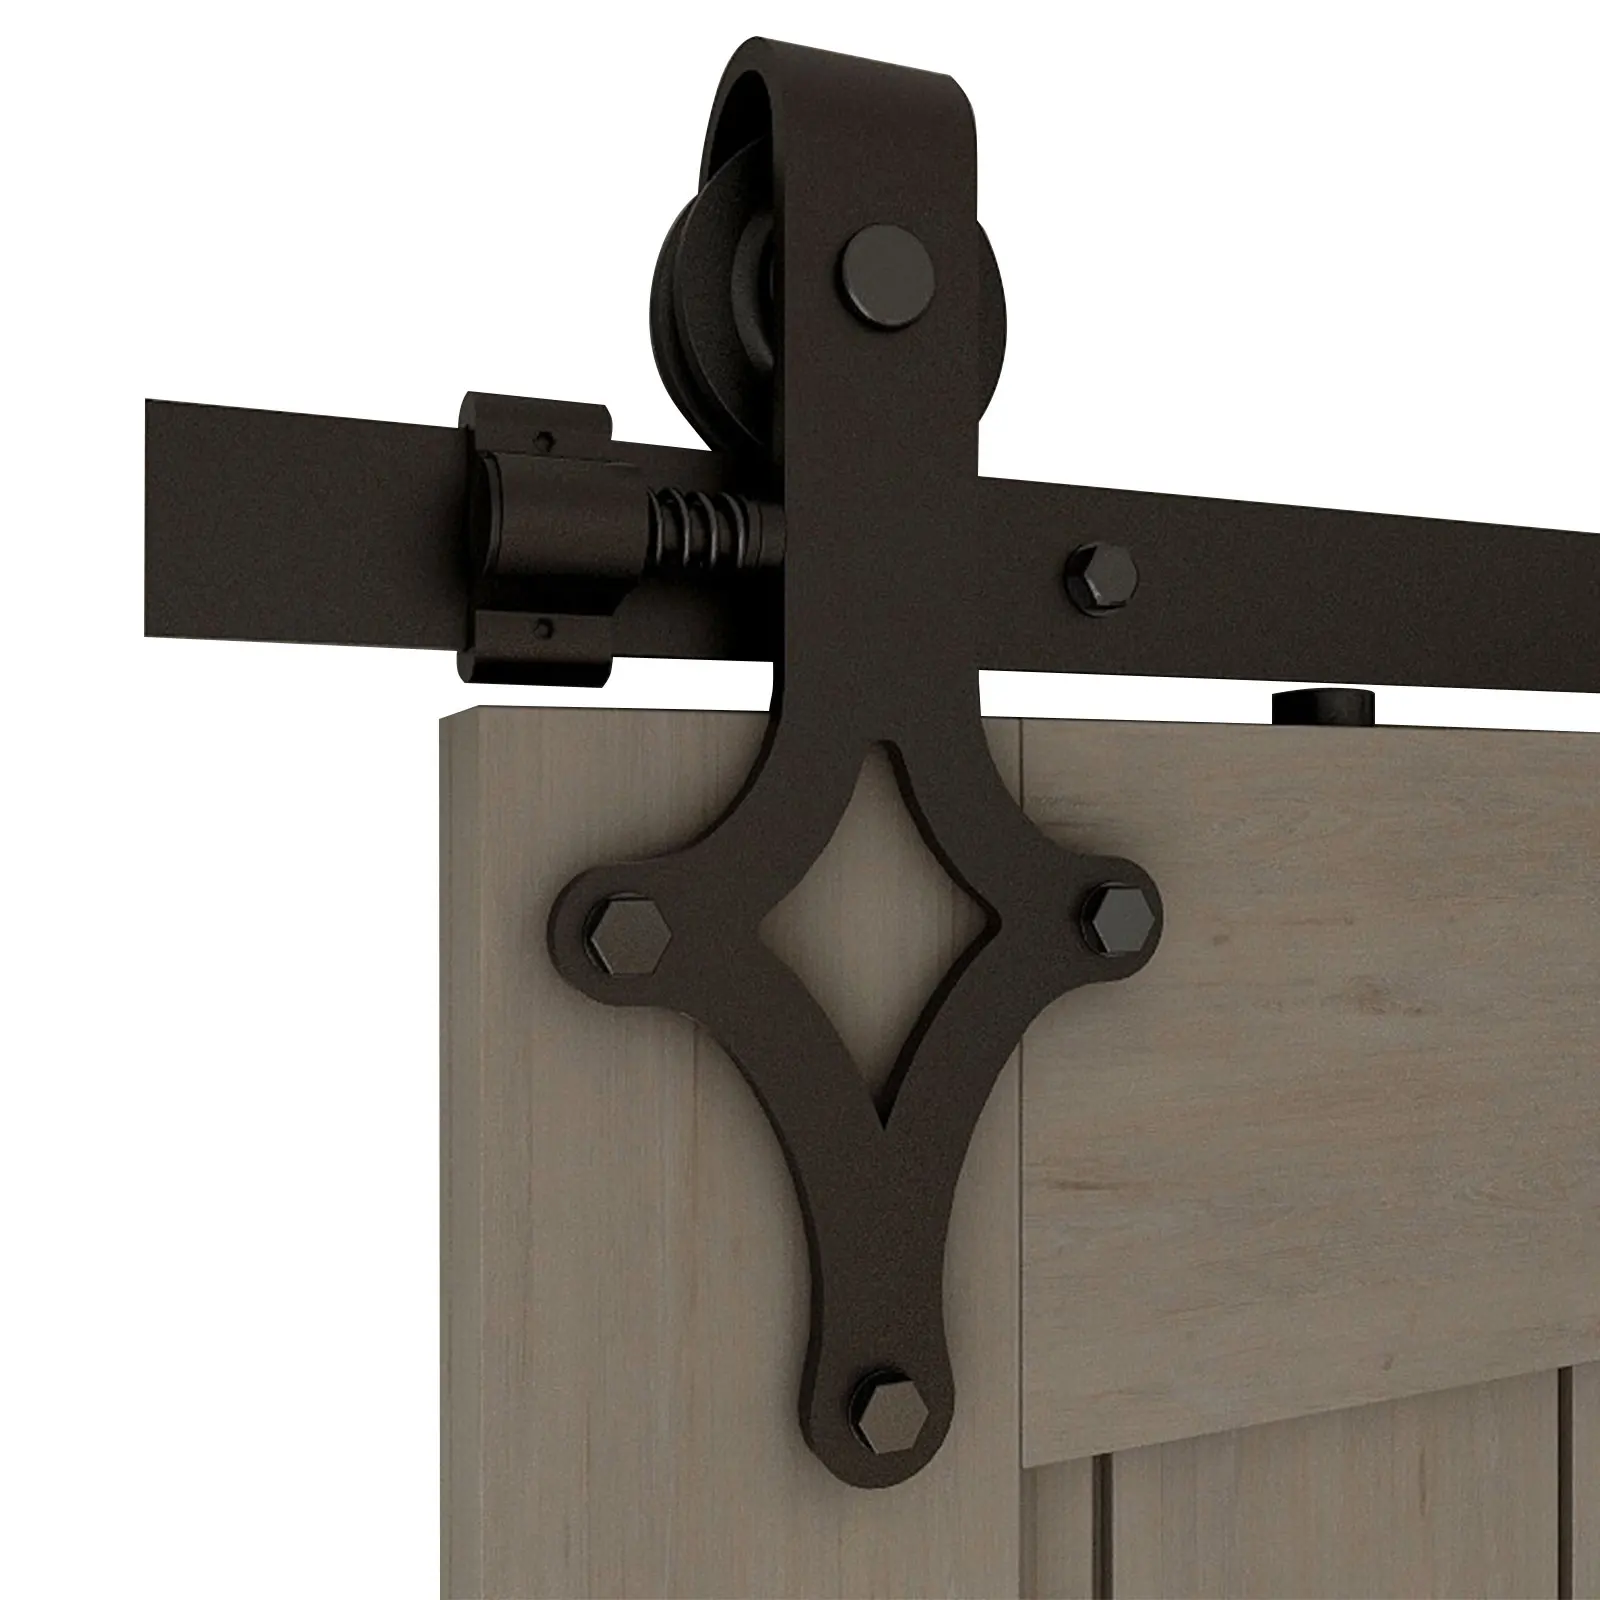 

Фурнитура для раздвижных дверей, комплект для шкафа с двойной деревянной дверью, 20 футов, размер рельса может быть изменен